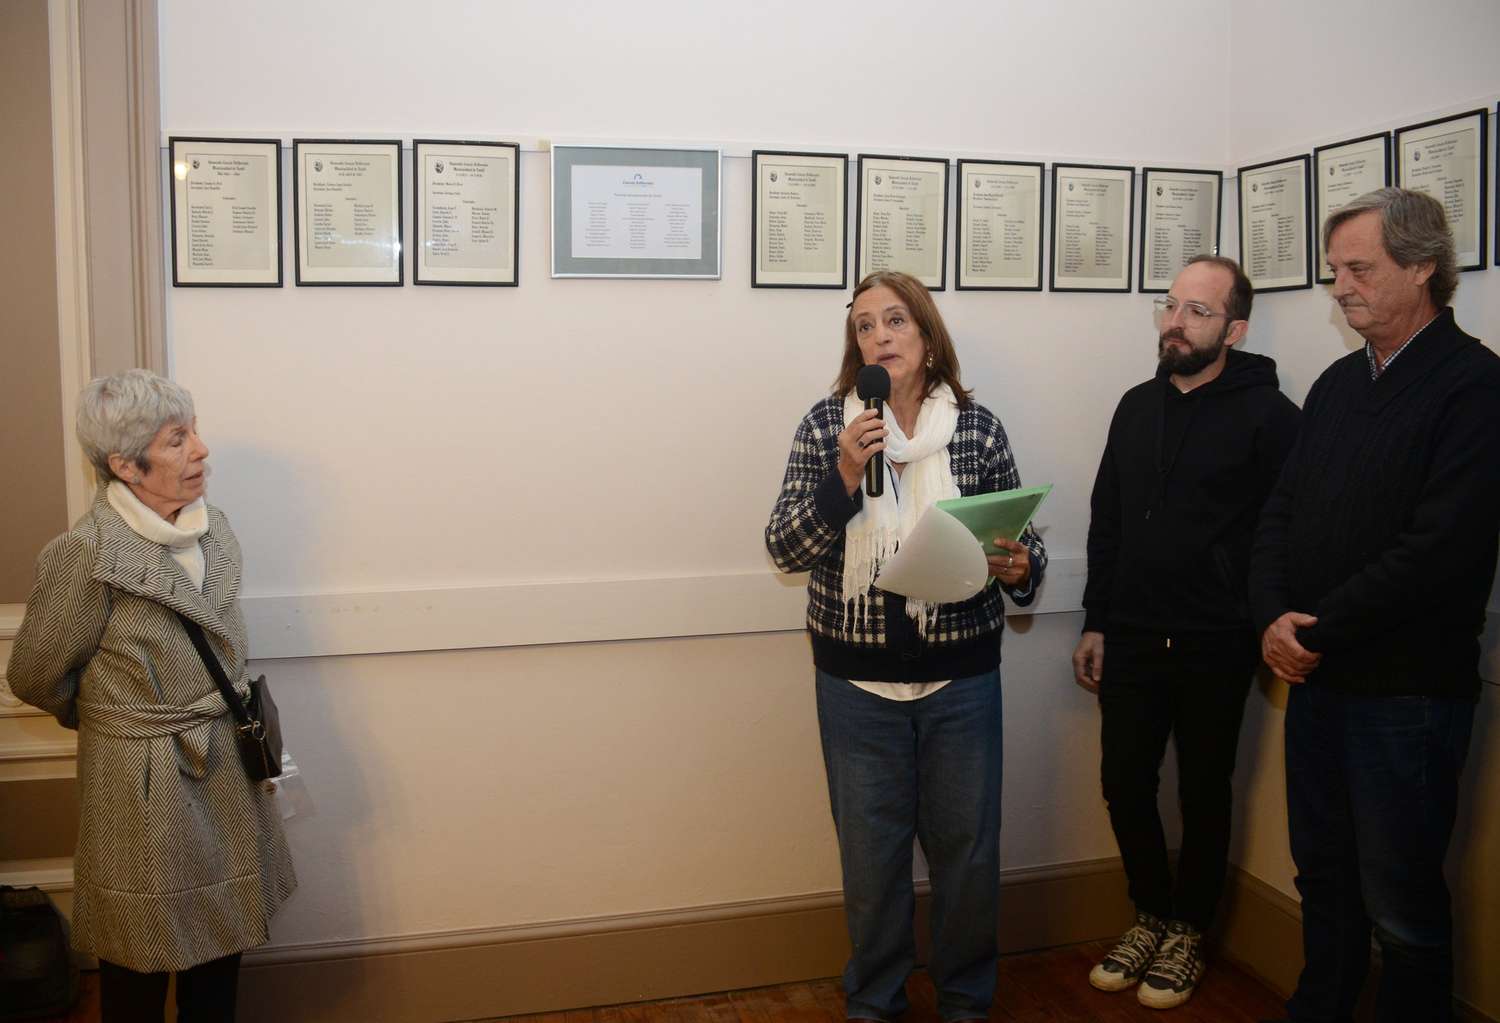 Petra Marzocca, Anahí Marocchi, Nicolás Carrillo y Juan Pablo Frolik, tras el descubrimiento del cuadro.